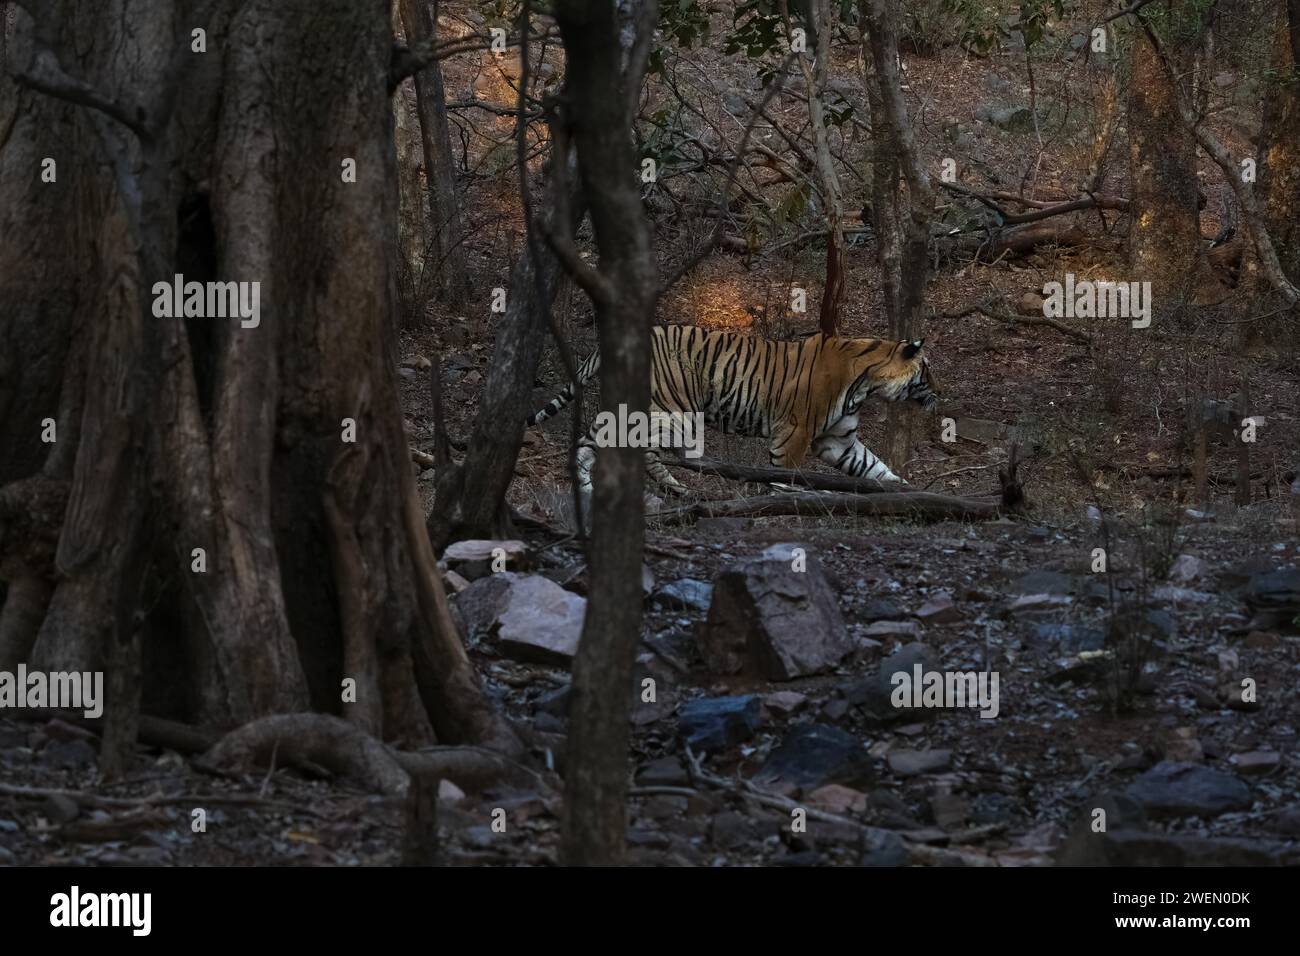 Männlicher Tiger (Panthera tigris) fotografiert im Dschungel des Ranthambore National Park, berühmt für Tiger in Rajastan Indien Stockfoto